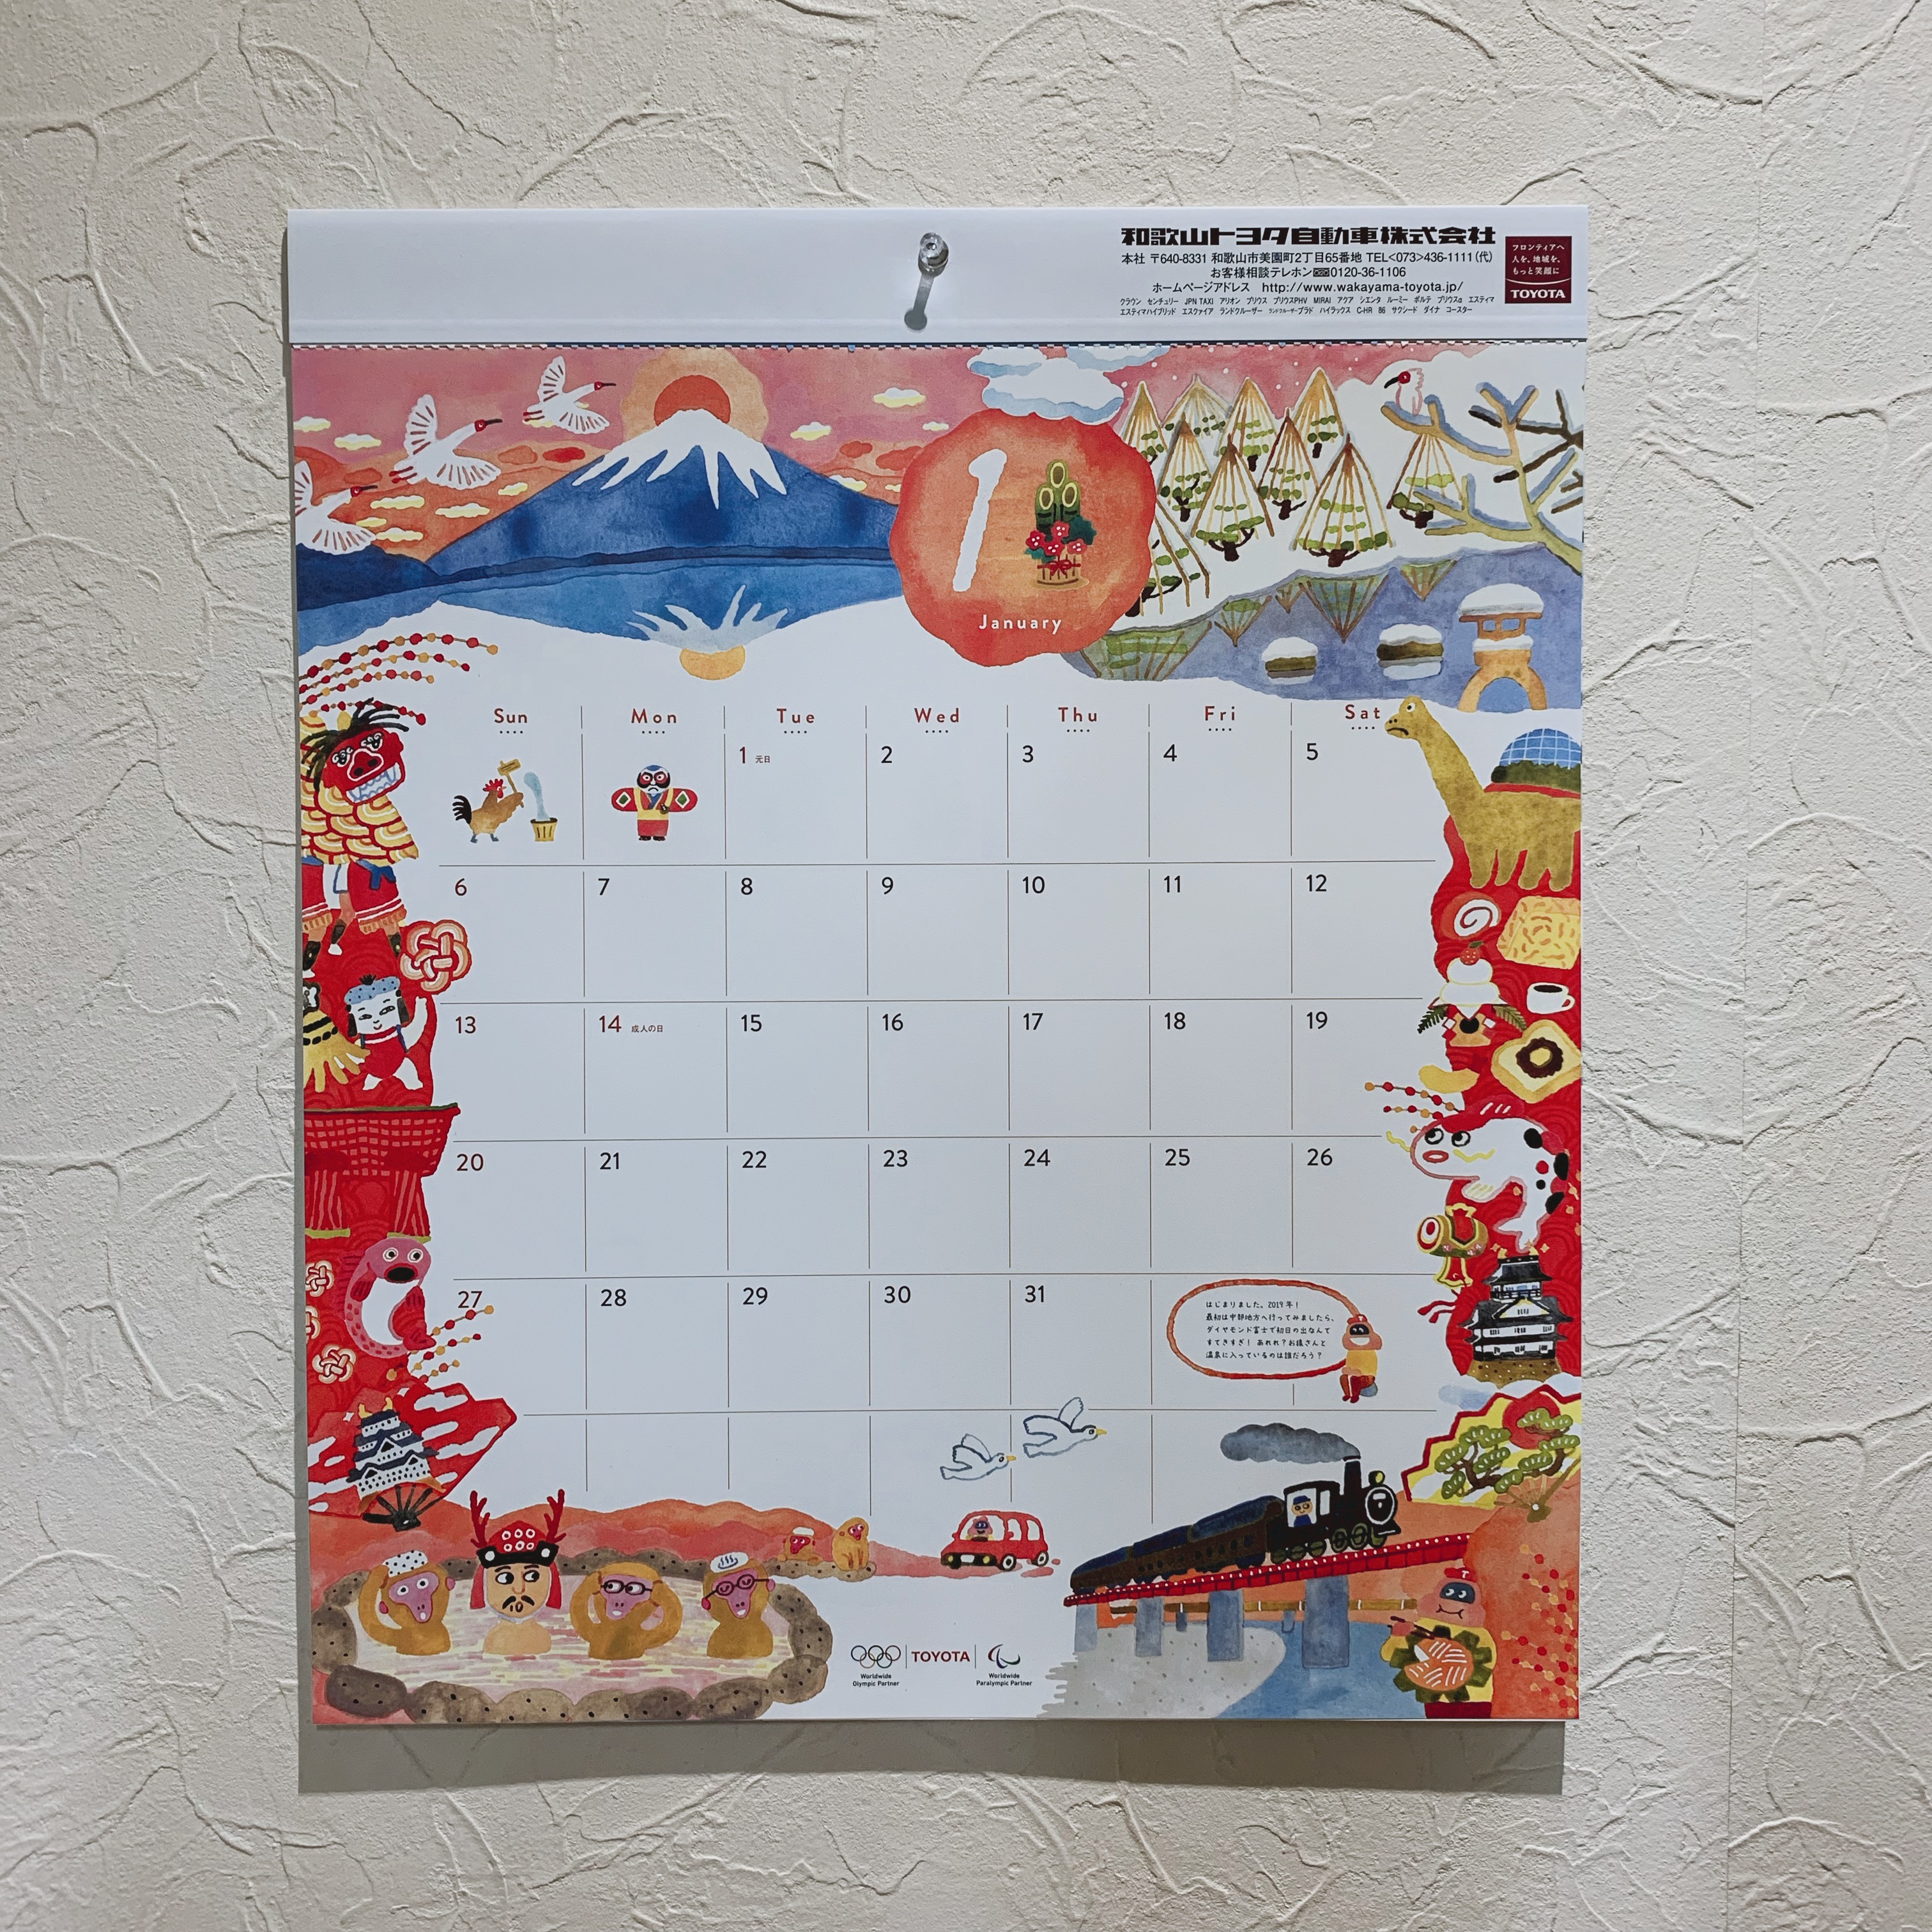 19年カレンダー到着 和歌山トヨタ自動車株式会社